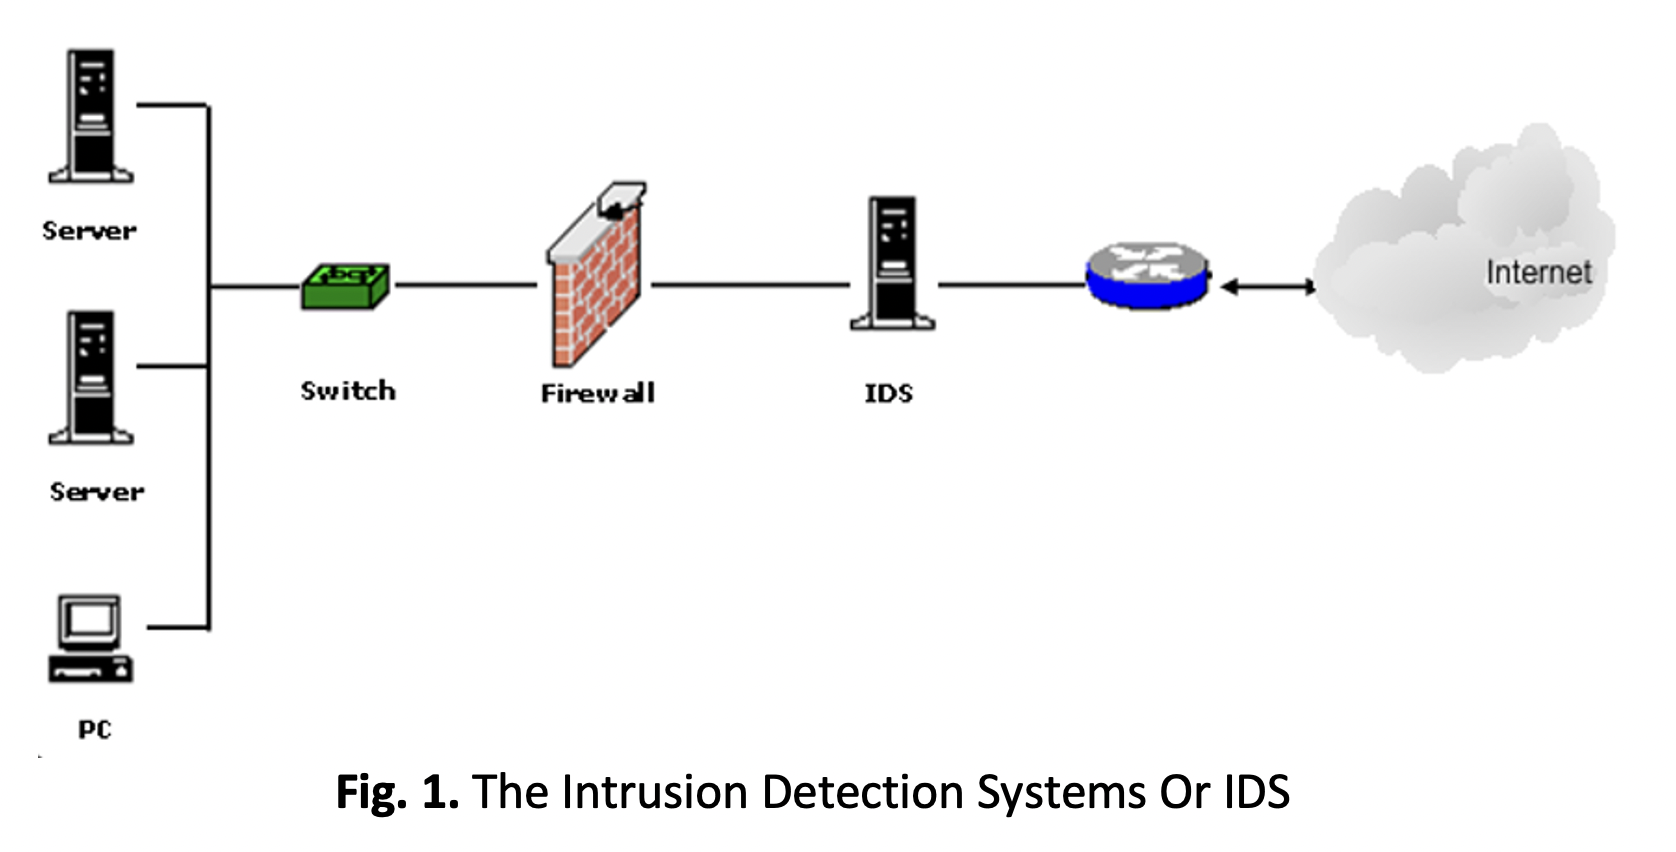 Systems википедия. Системы обнаружения вторжений (Intrusion Detection Systems). Системы обнаружения и предотвращения вторжений (IDS, IPS). Intrusion Detection System (IDS). IDS система обнаружения вторжений.